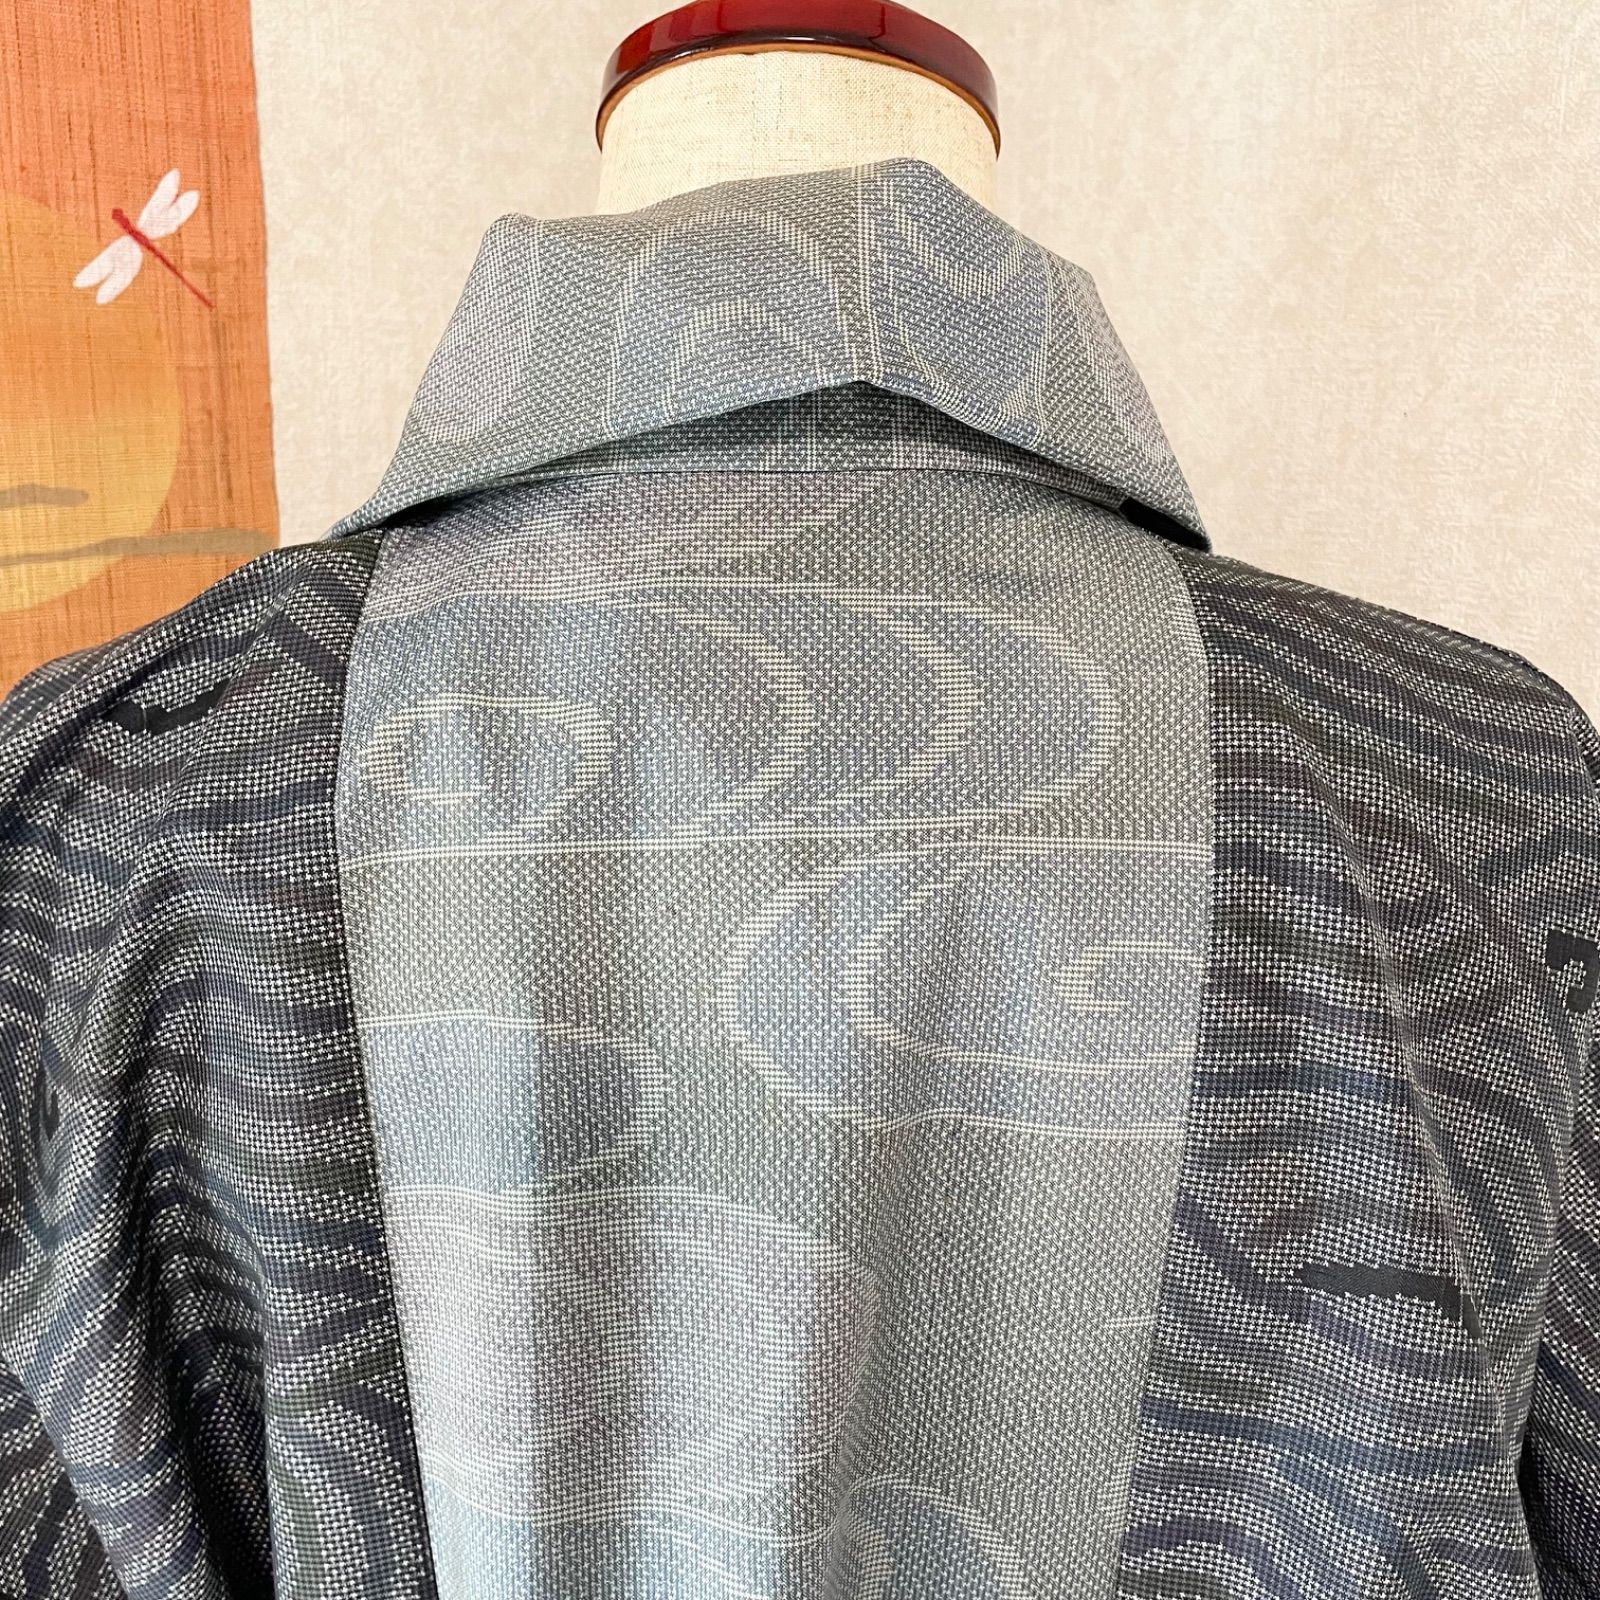 ハンドメイド 大島紬で作ったコート 朝まだき - メルカリ